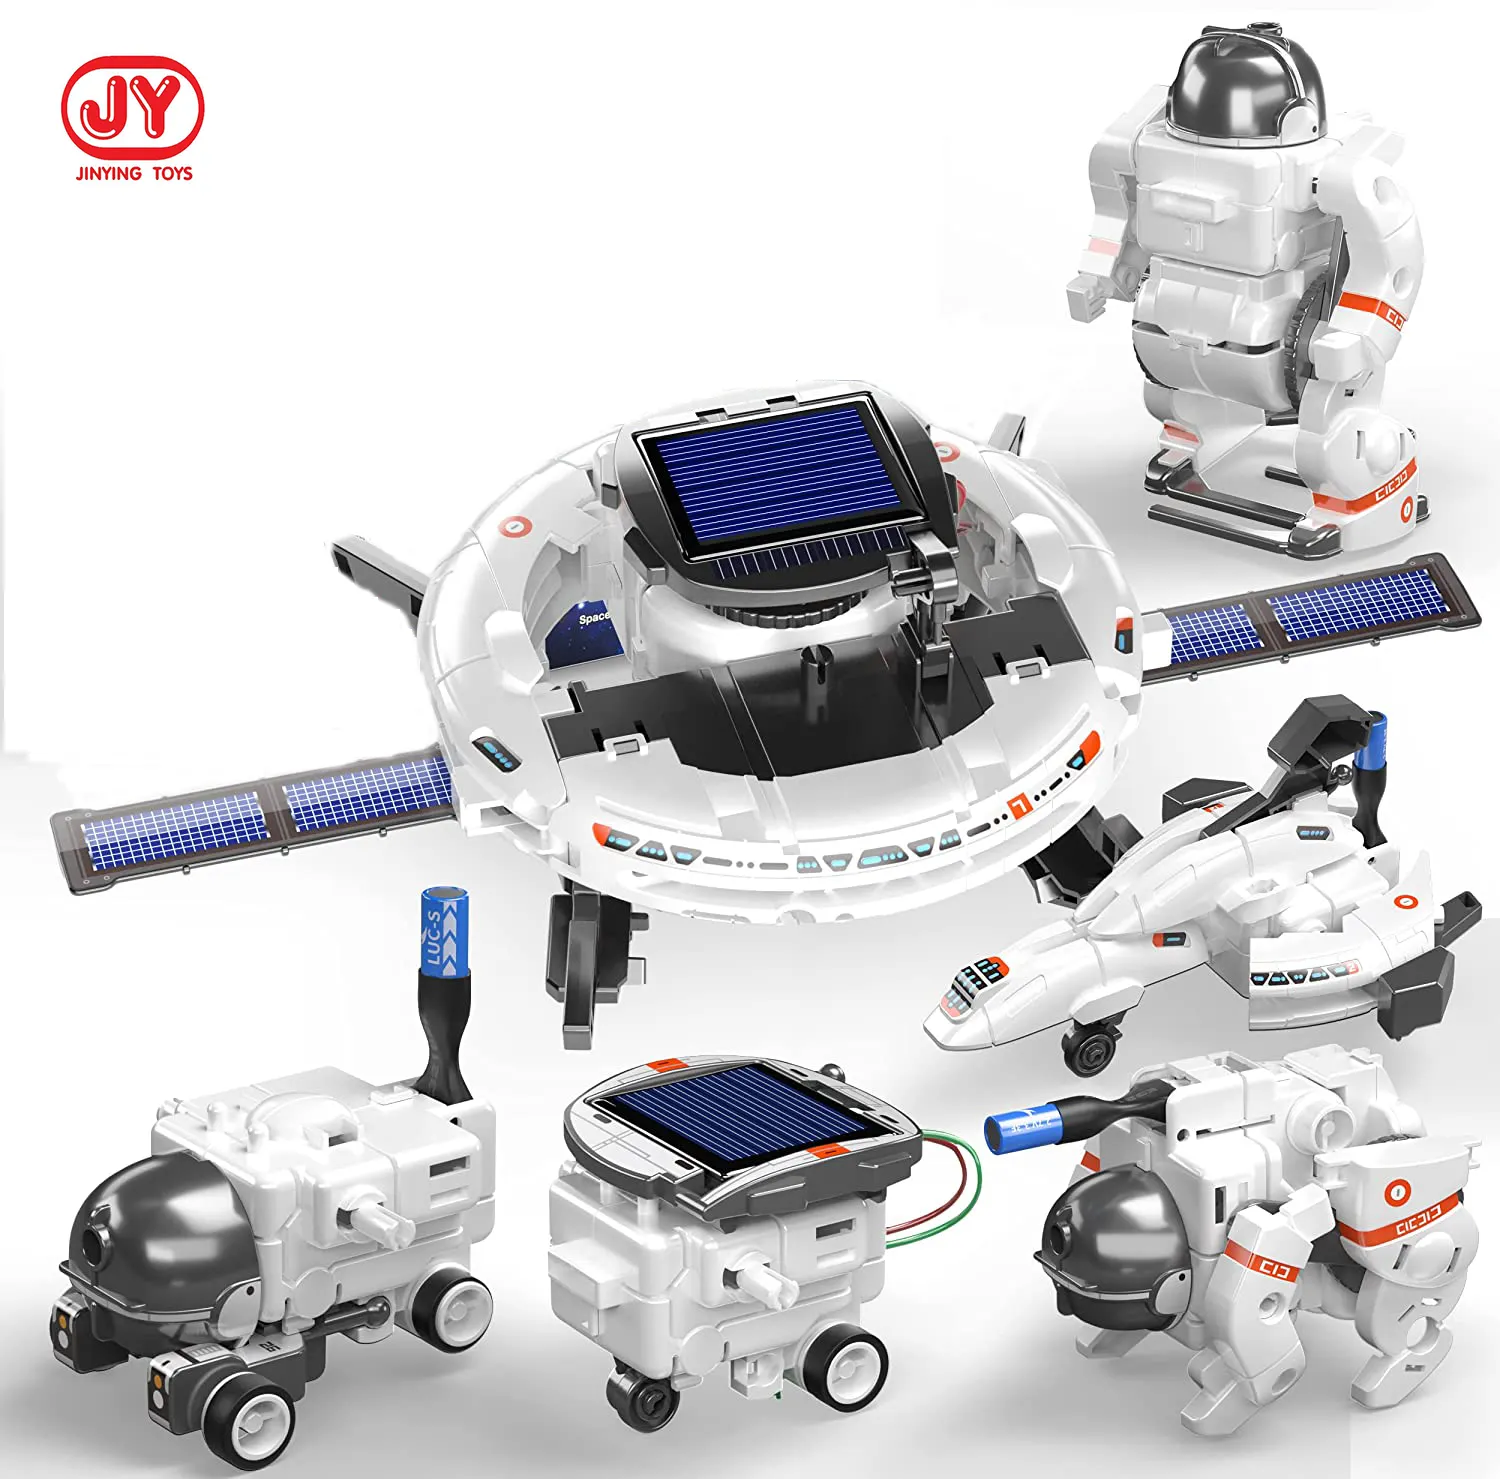 Kök oyuncaklar çocuklar için 6-in-1 güneş Robot kiti eğitim öğrenme bilim deney bina DIY projeleri uzay oyuncaklar güneş enerjisi